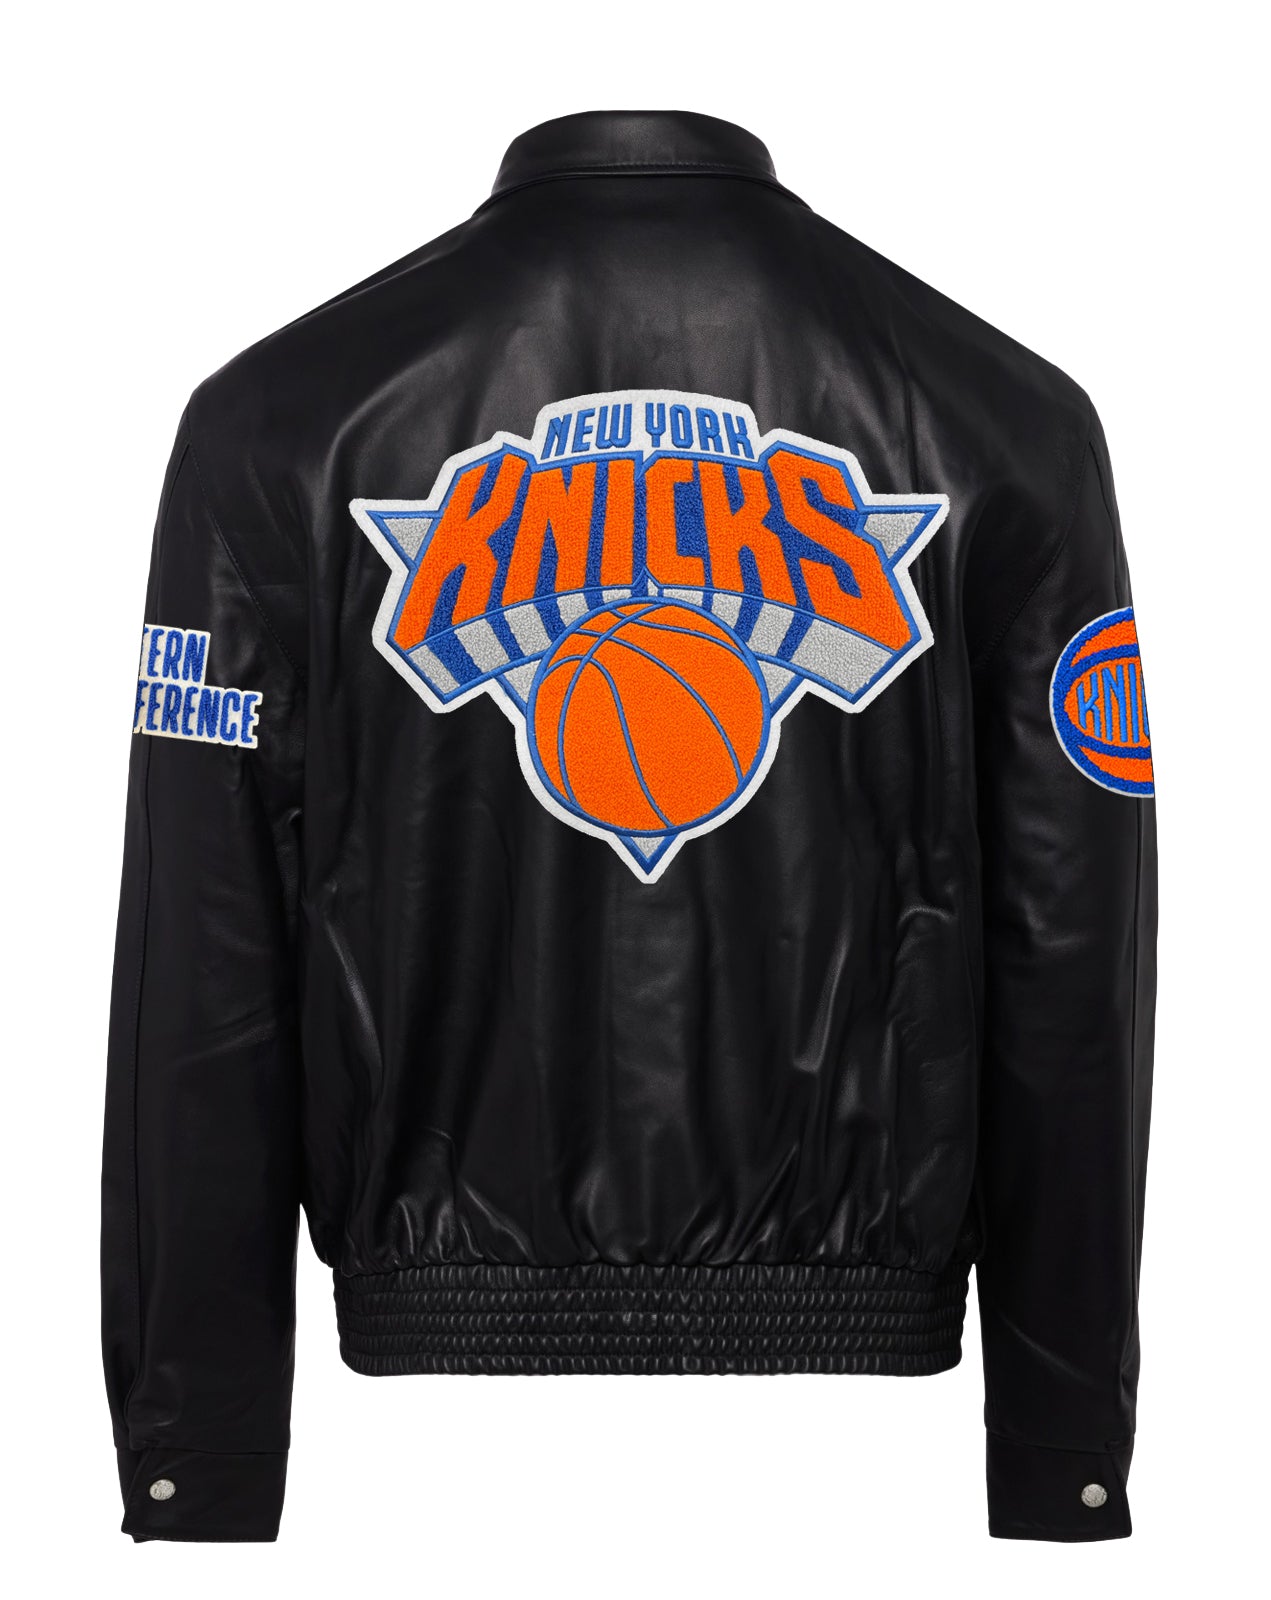 Jeff Hamilton NY Knicks Jacket